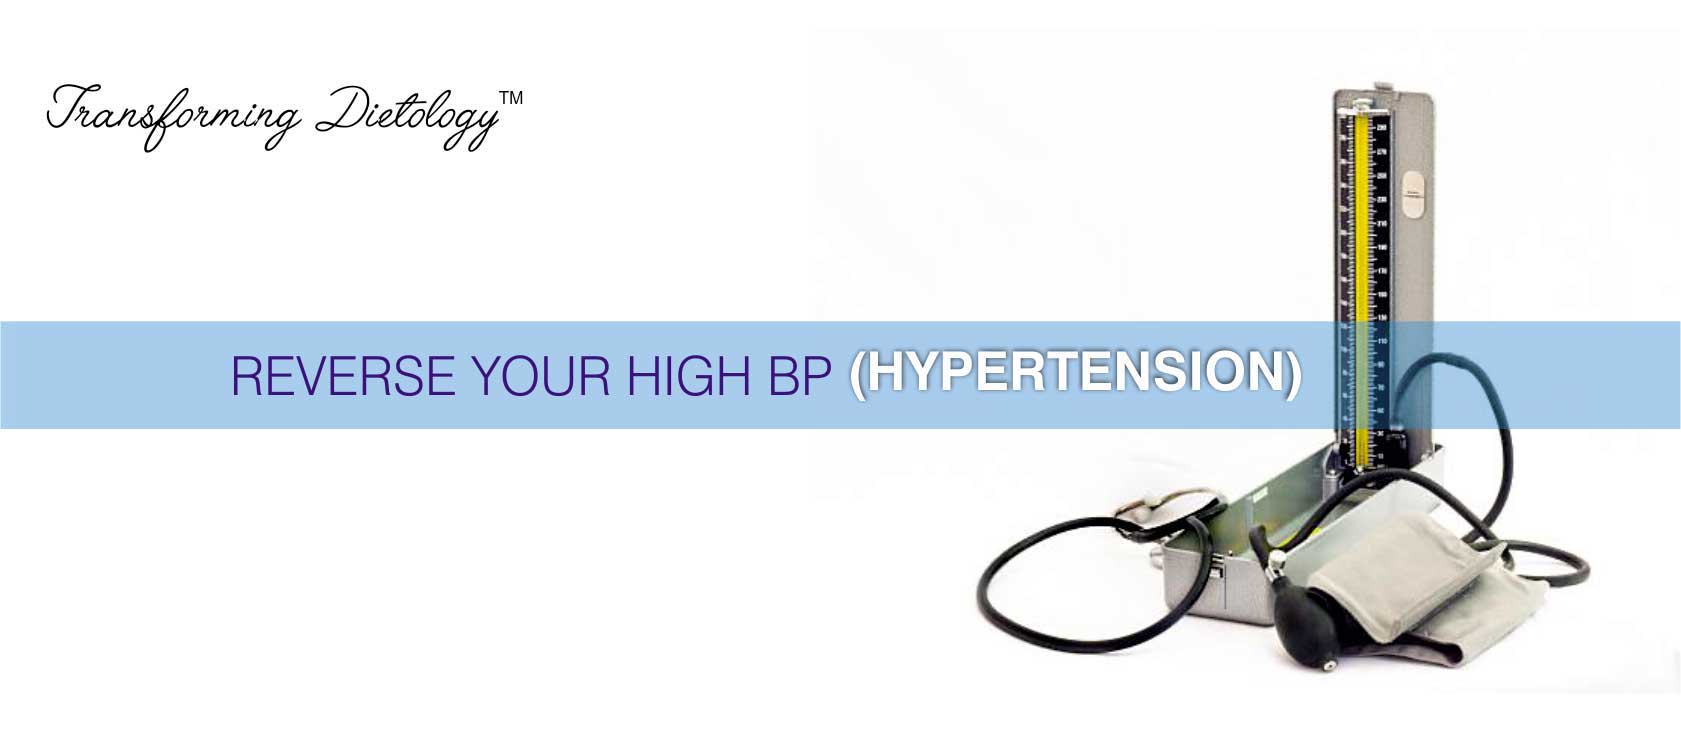 Hypertension (High BP)